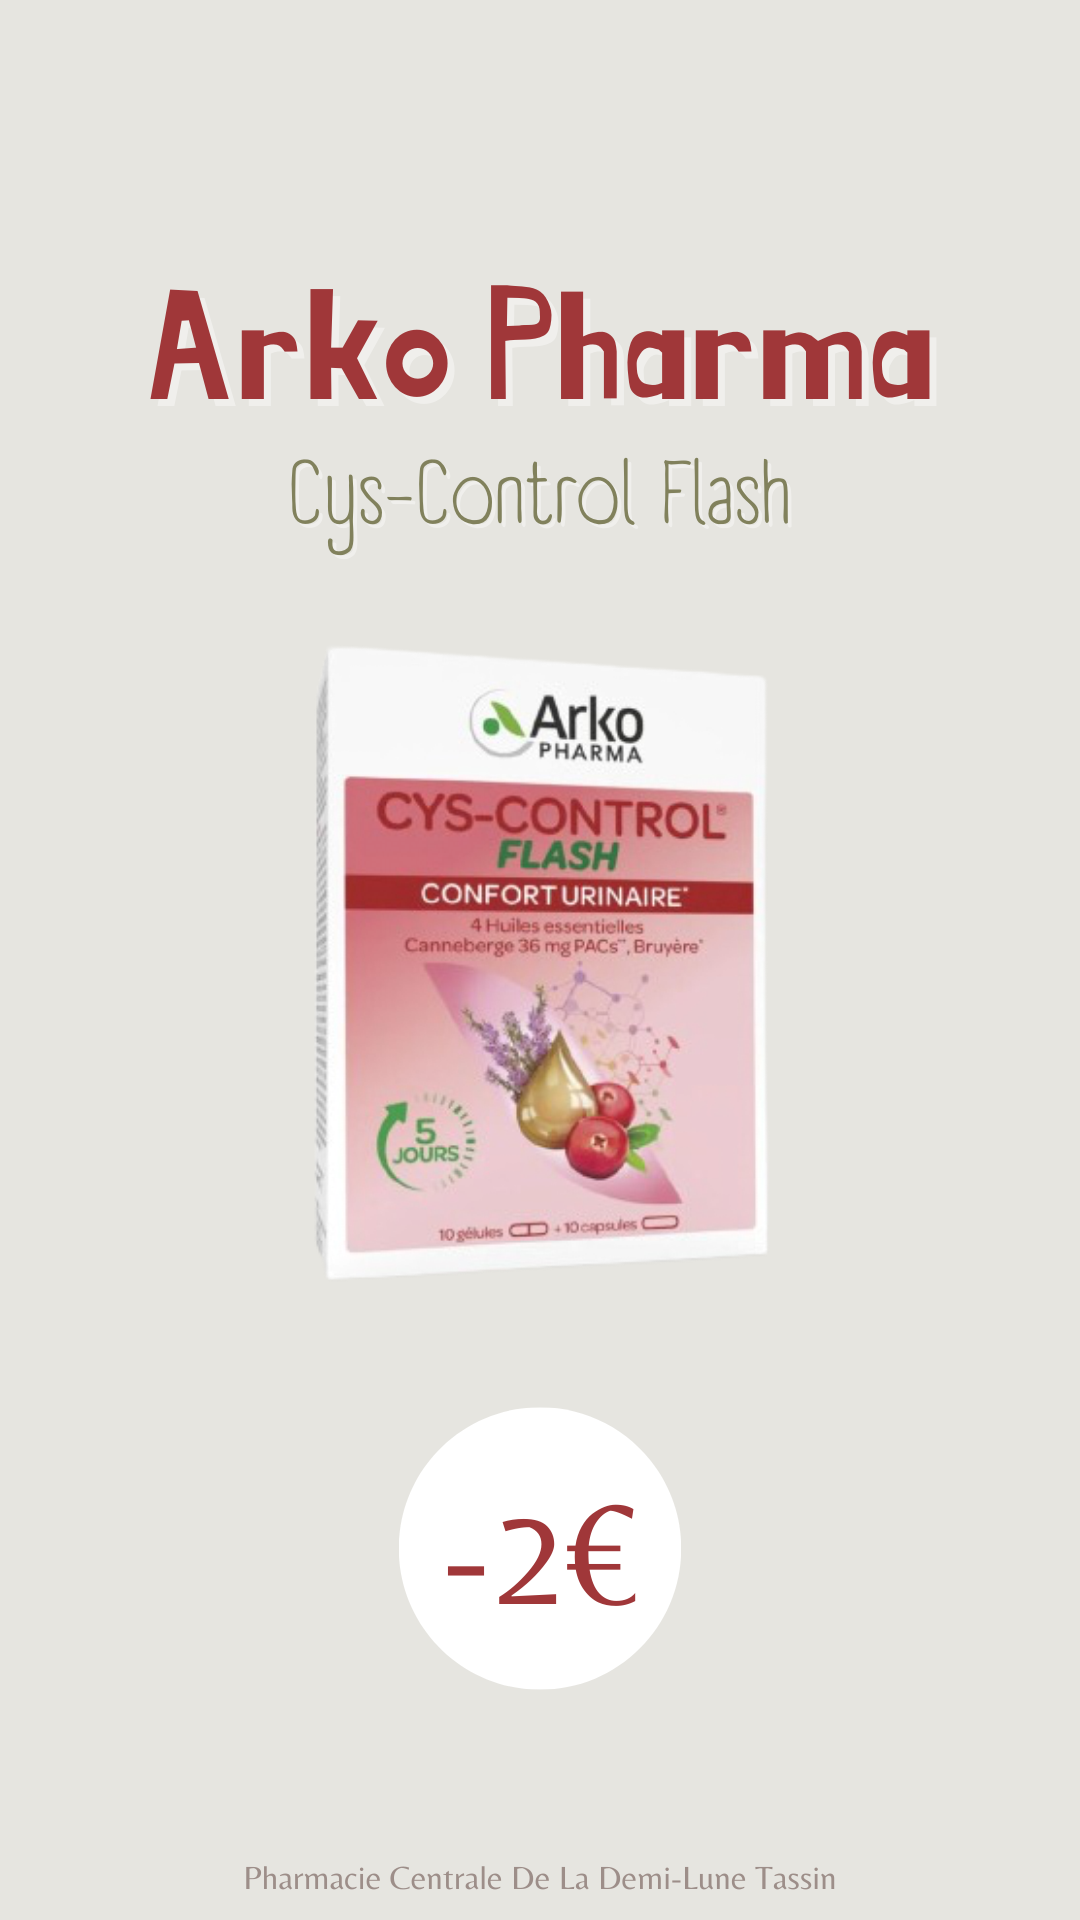 Cys-control